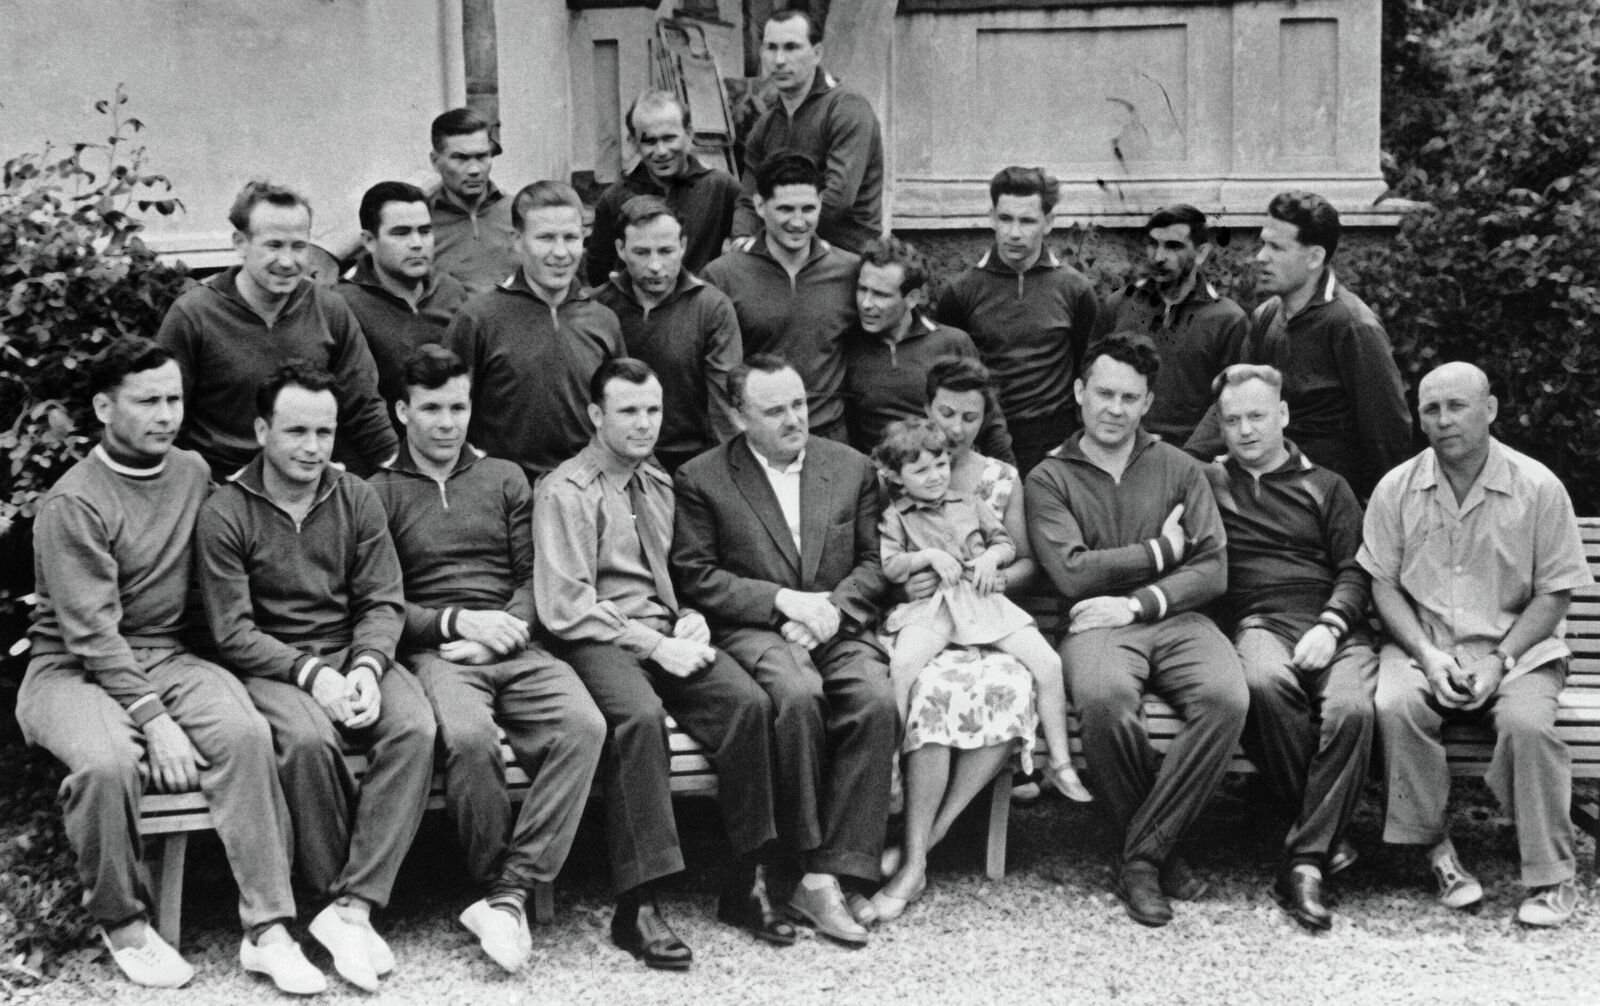 Первый отряд космонавтов фото с фамилиями